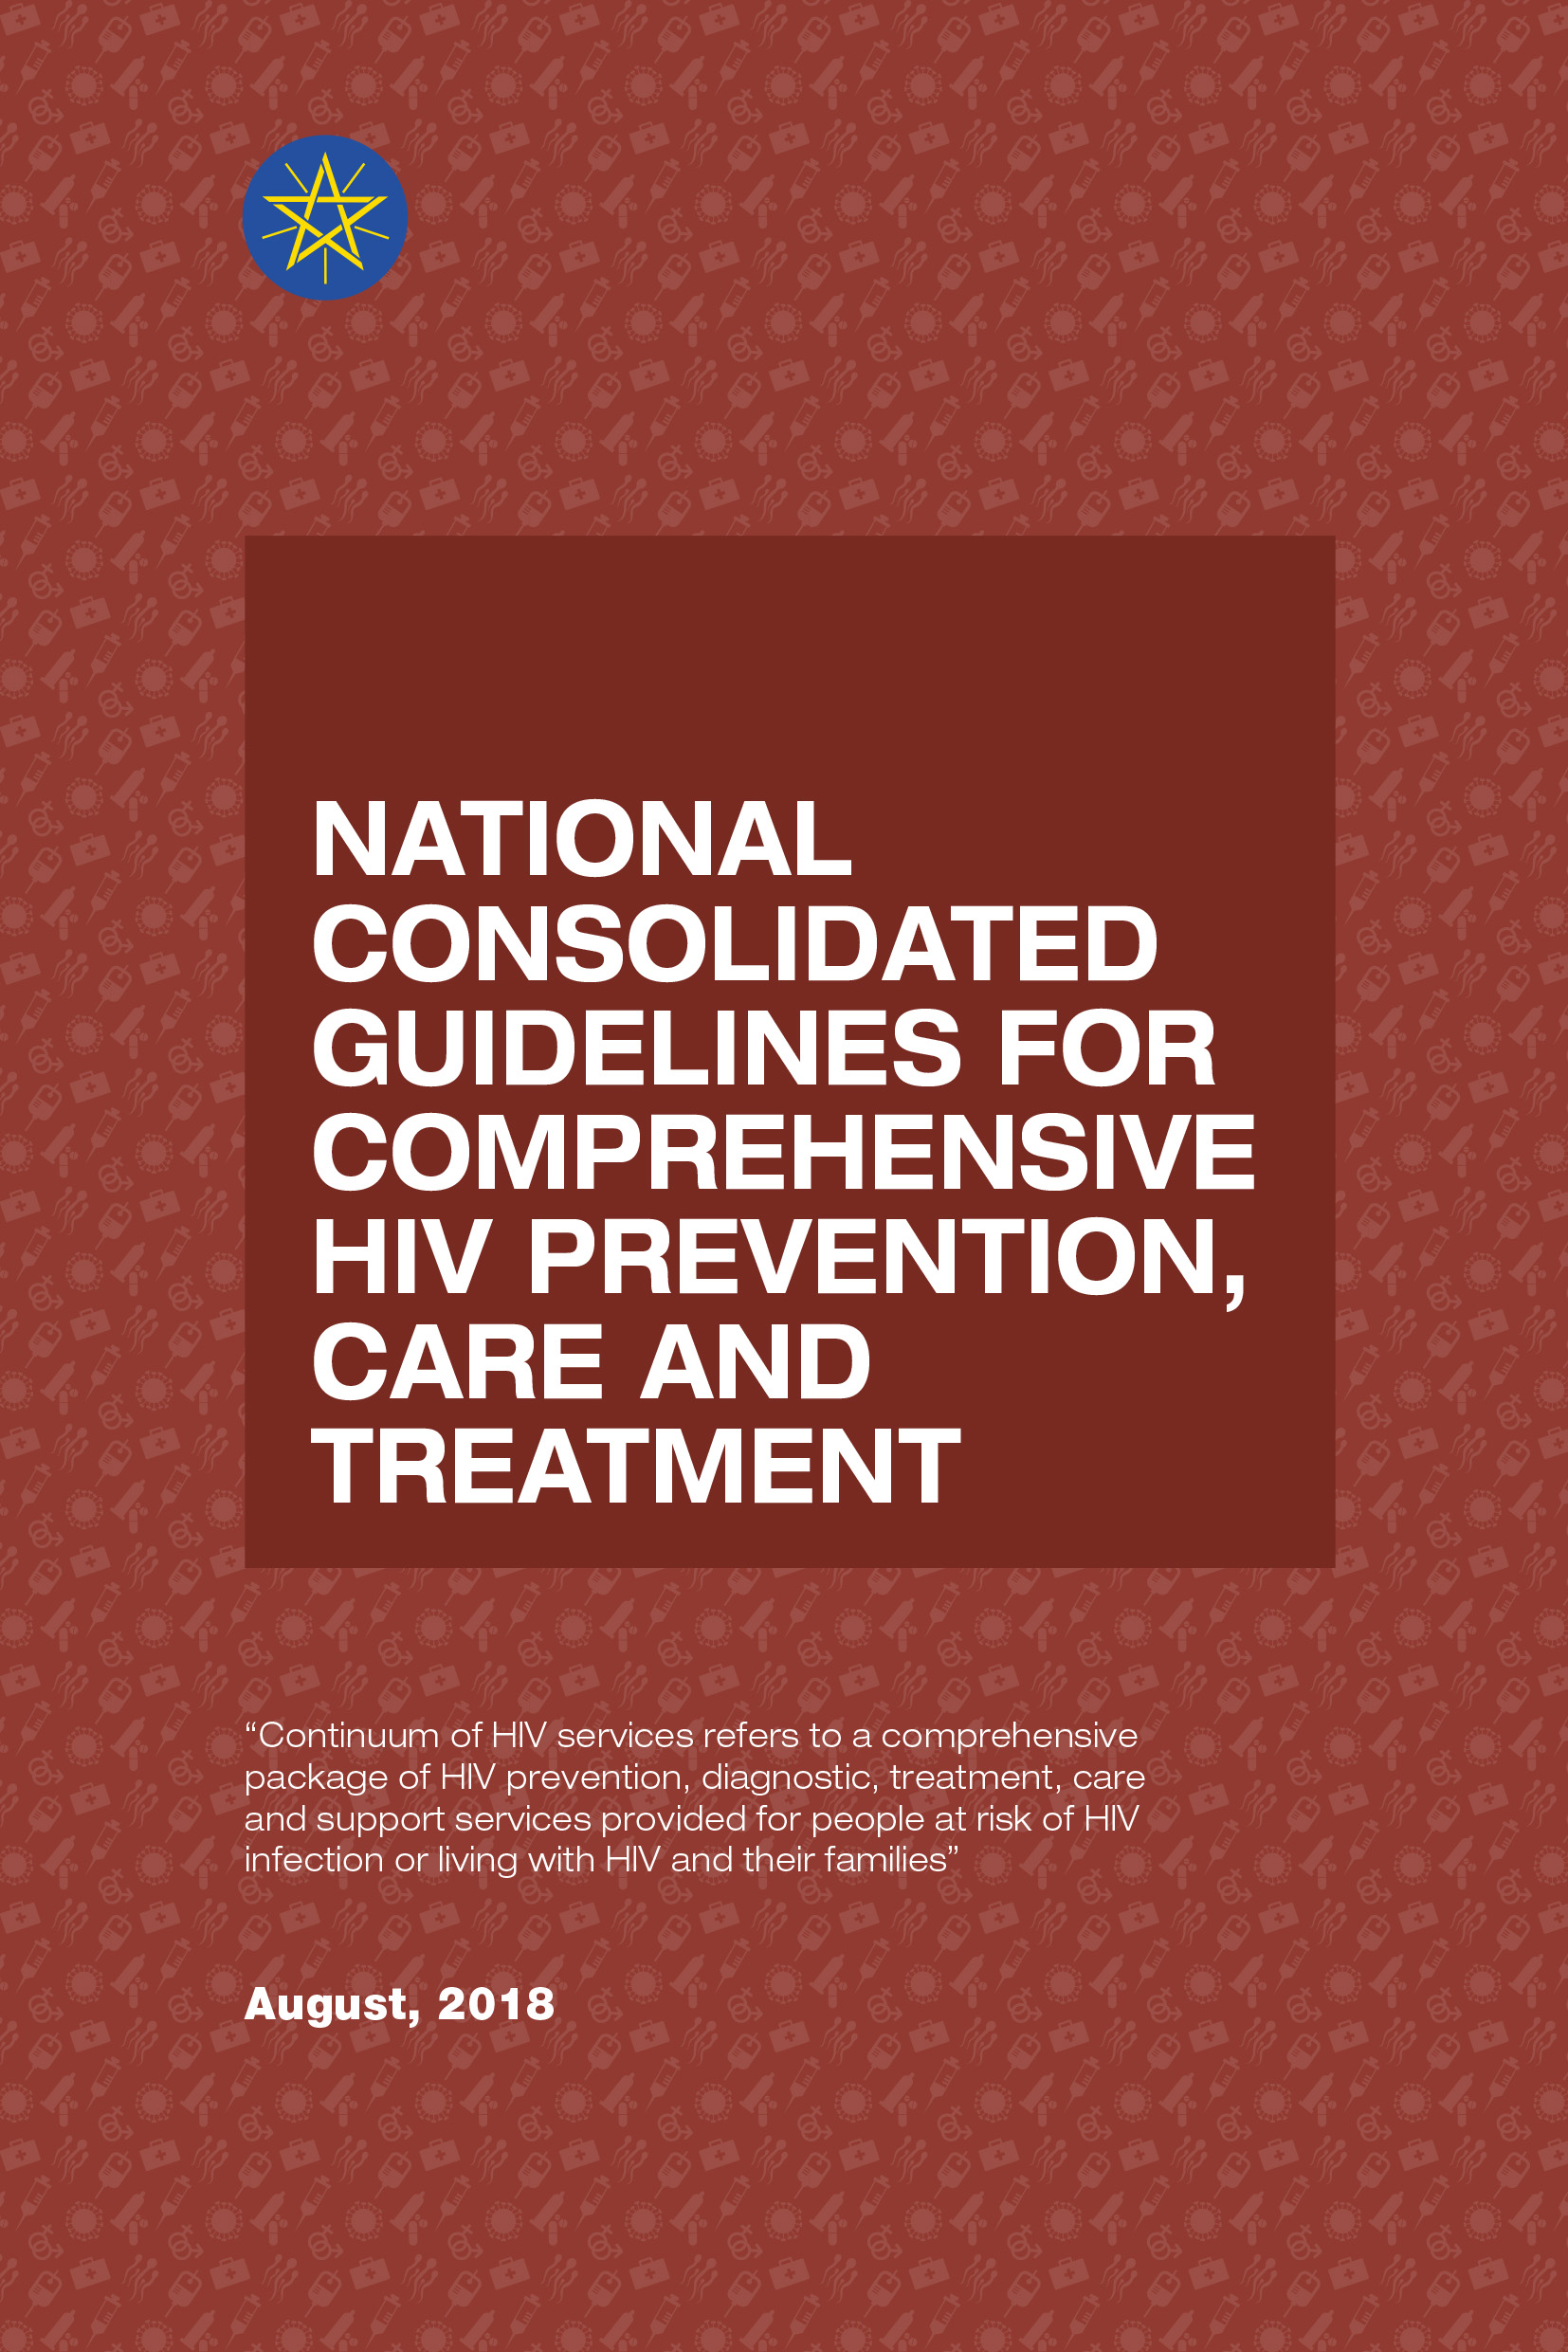 Directrices nacionales consolidadas para la prevención, atención y tratamiento integrales del VIH 